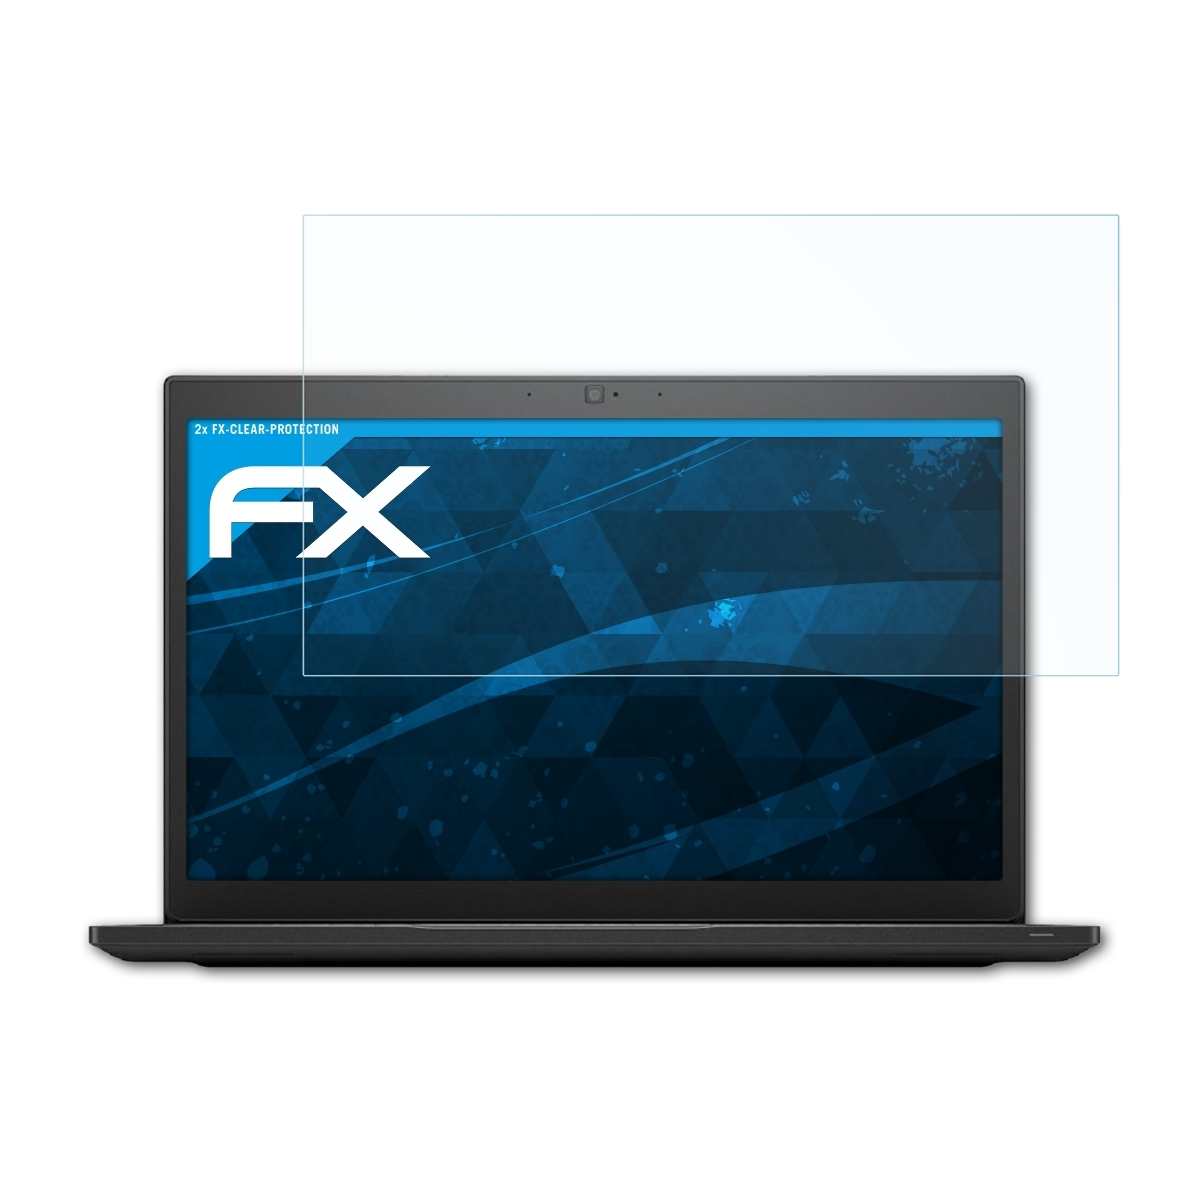 ATFOLIX Dell 7490) FX-Clear 2x Displayschutz(für Latitude